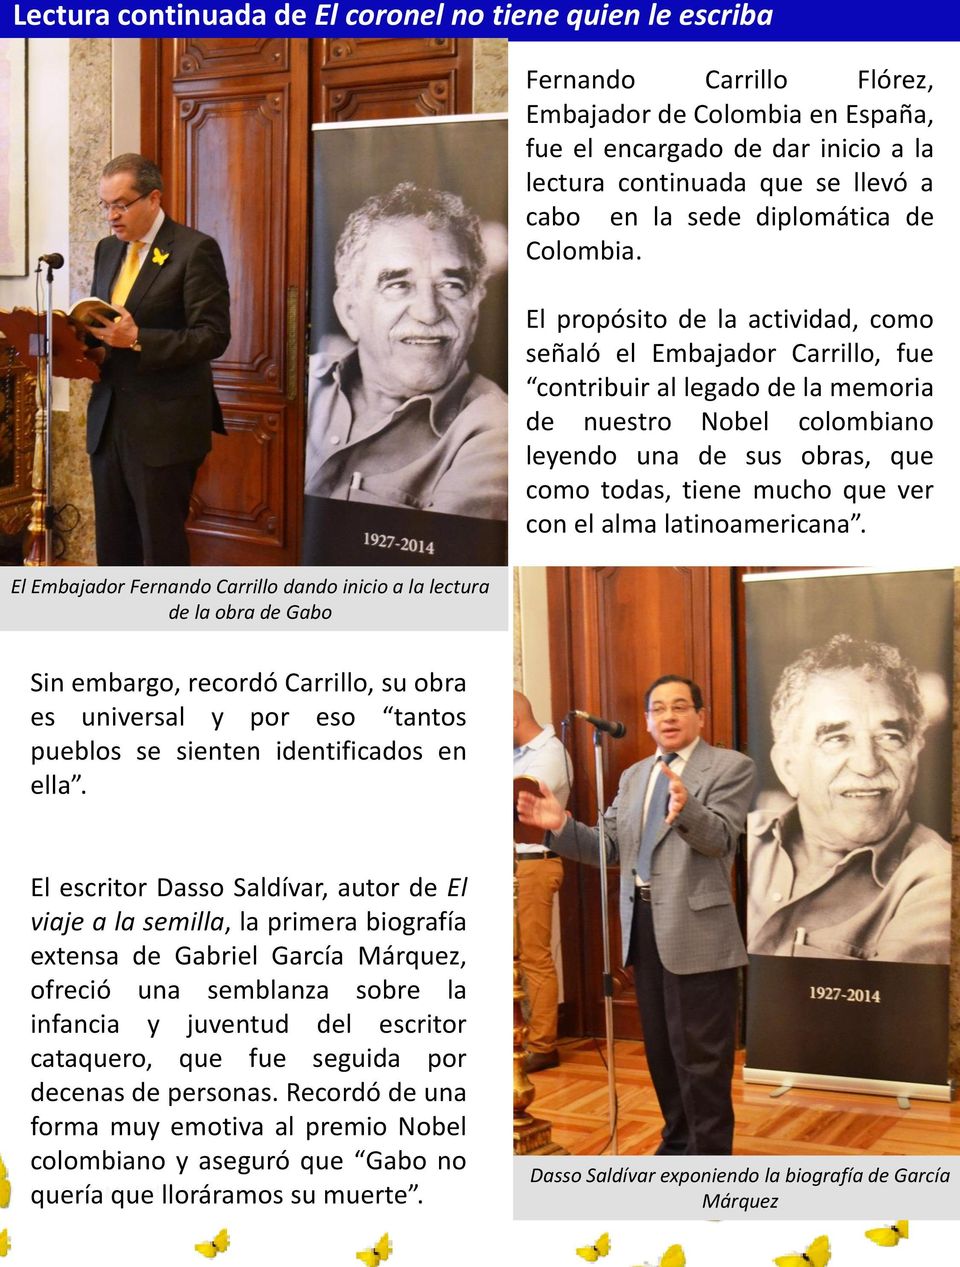 El propósito de la actividad, como señaló el Embajador Carrillo, fue contribuir al legado de la memoria de nuestro Nobel colombiano leyendo una de sus obras, que como todas, tiene mucho que ver con